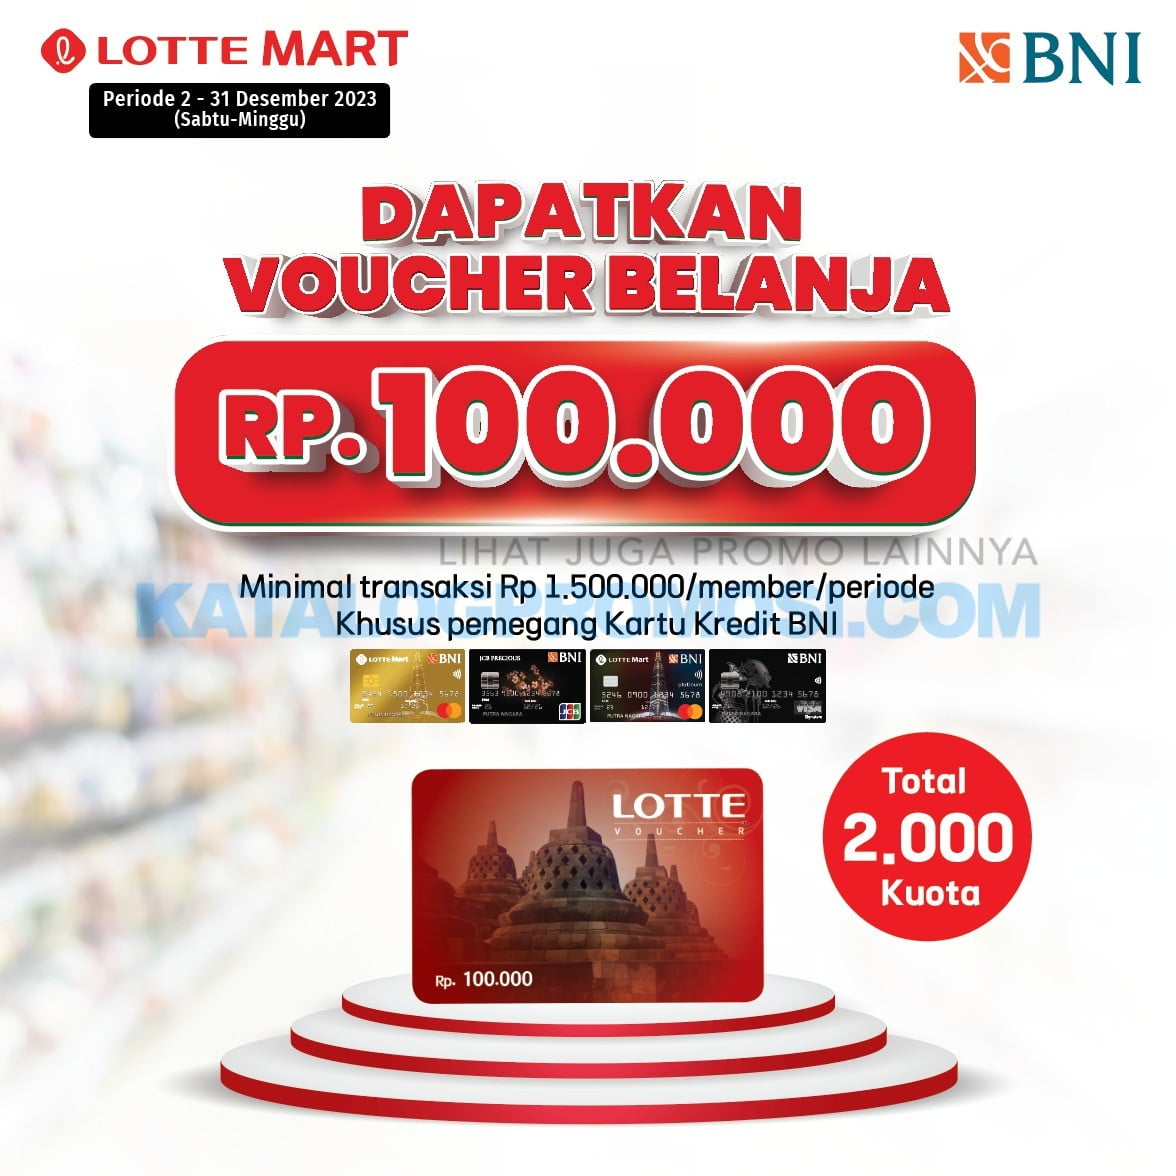 Promo LOTTEMART GRATIS Voucher Belanja Rp. 100.000 khusus pemegang Kartu Kredit BNI